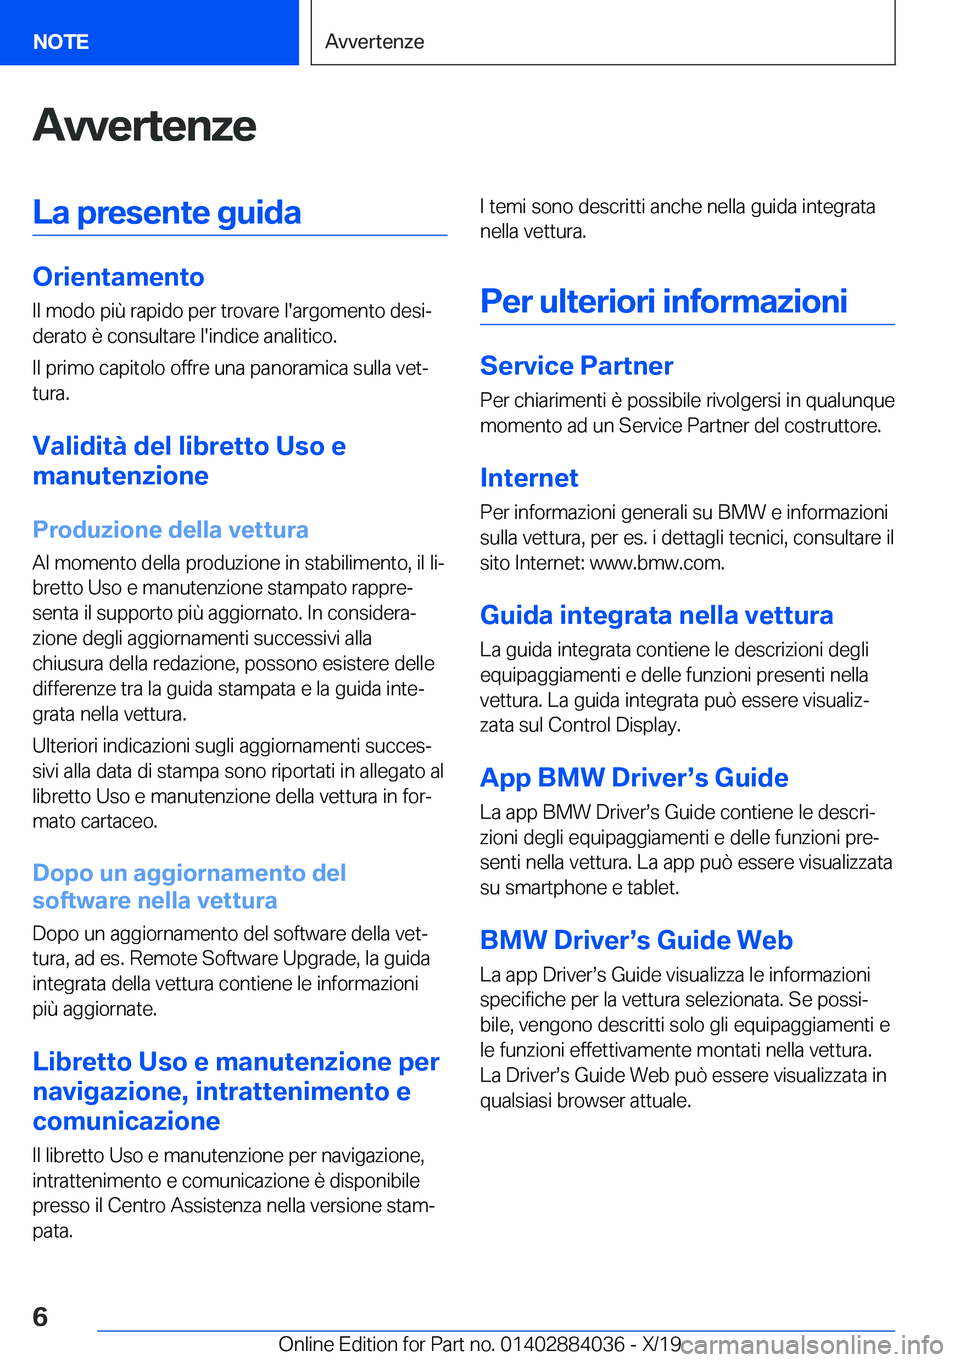 BMW 7 SERIES 2020  Libretti Di Uso E manutenzione (in Italian) �A�v�v�e�r�t�e�n�z�e�L�a��p�r�e�s�e�n�t�e��g�u�i�d�a
�O�r�i�e�n�t�a�m�e�n�t�o�I�l��m�o�d�o��p�i�